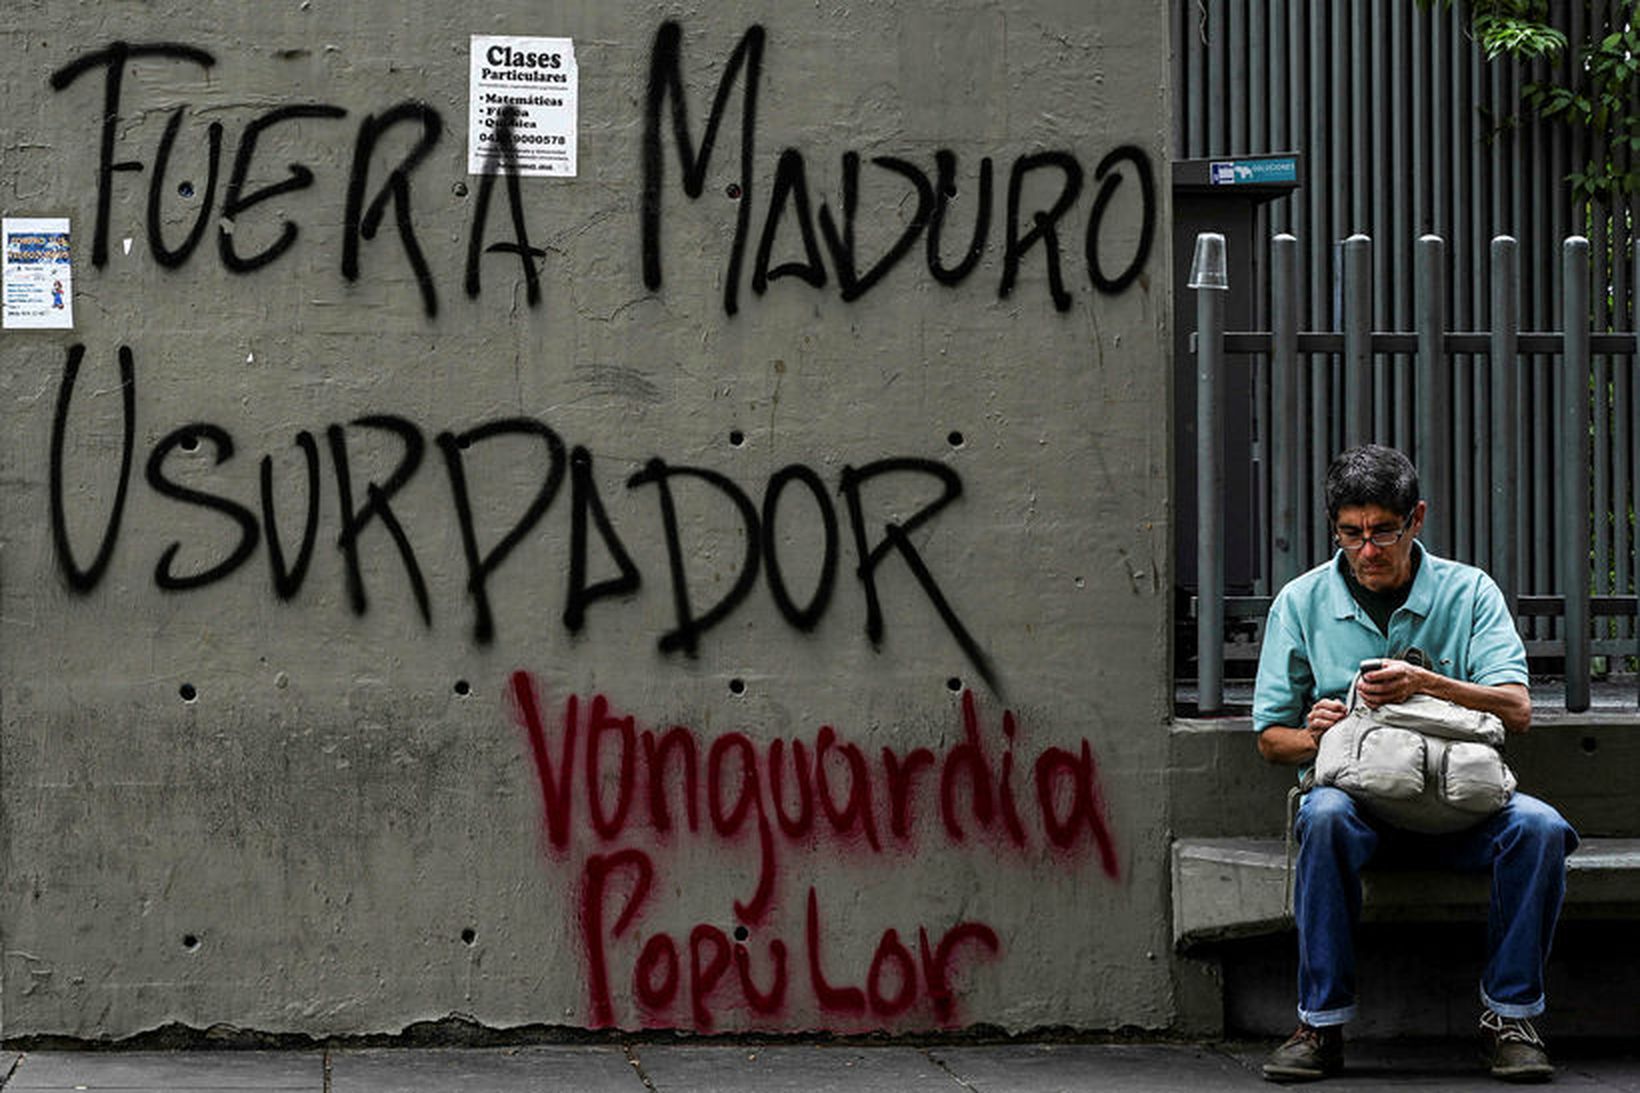 Út með Maduro valdaræningja, stendur á þessum vegg í Caracas, …